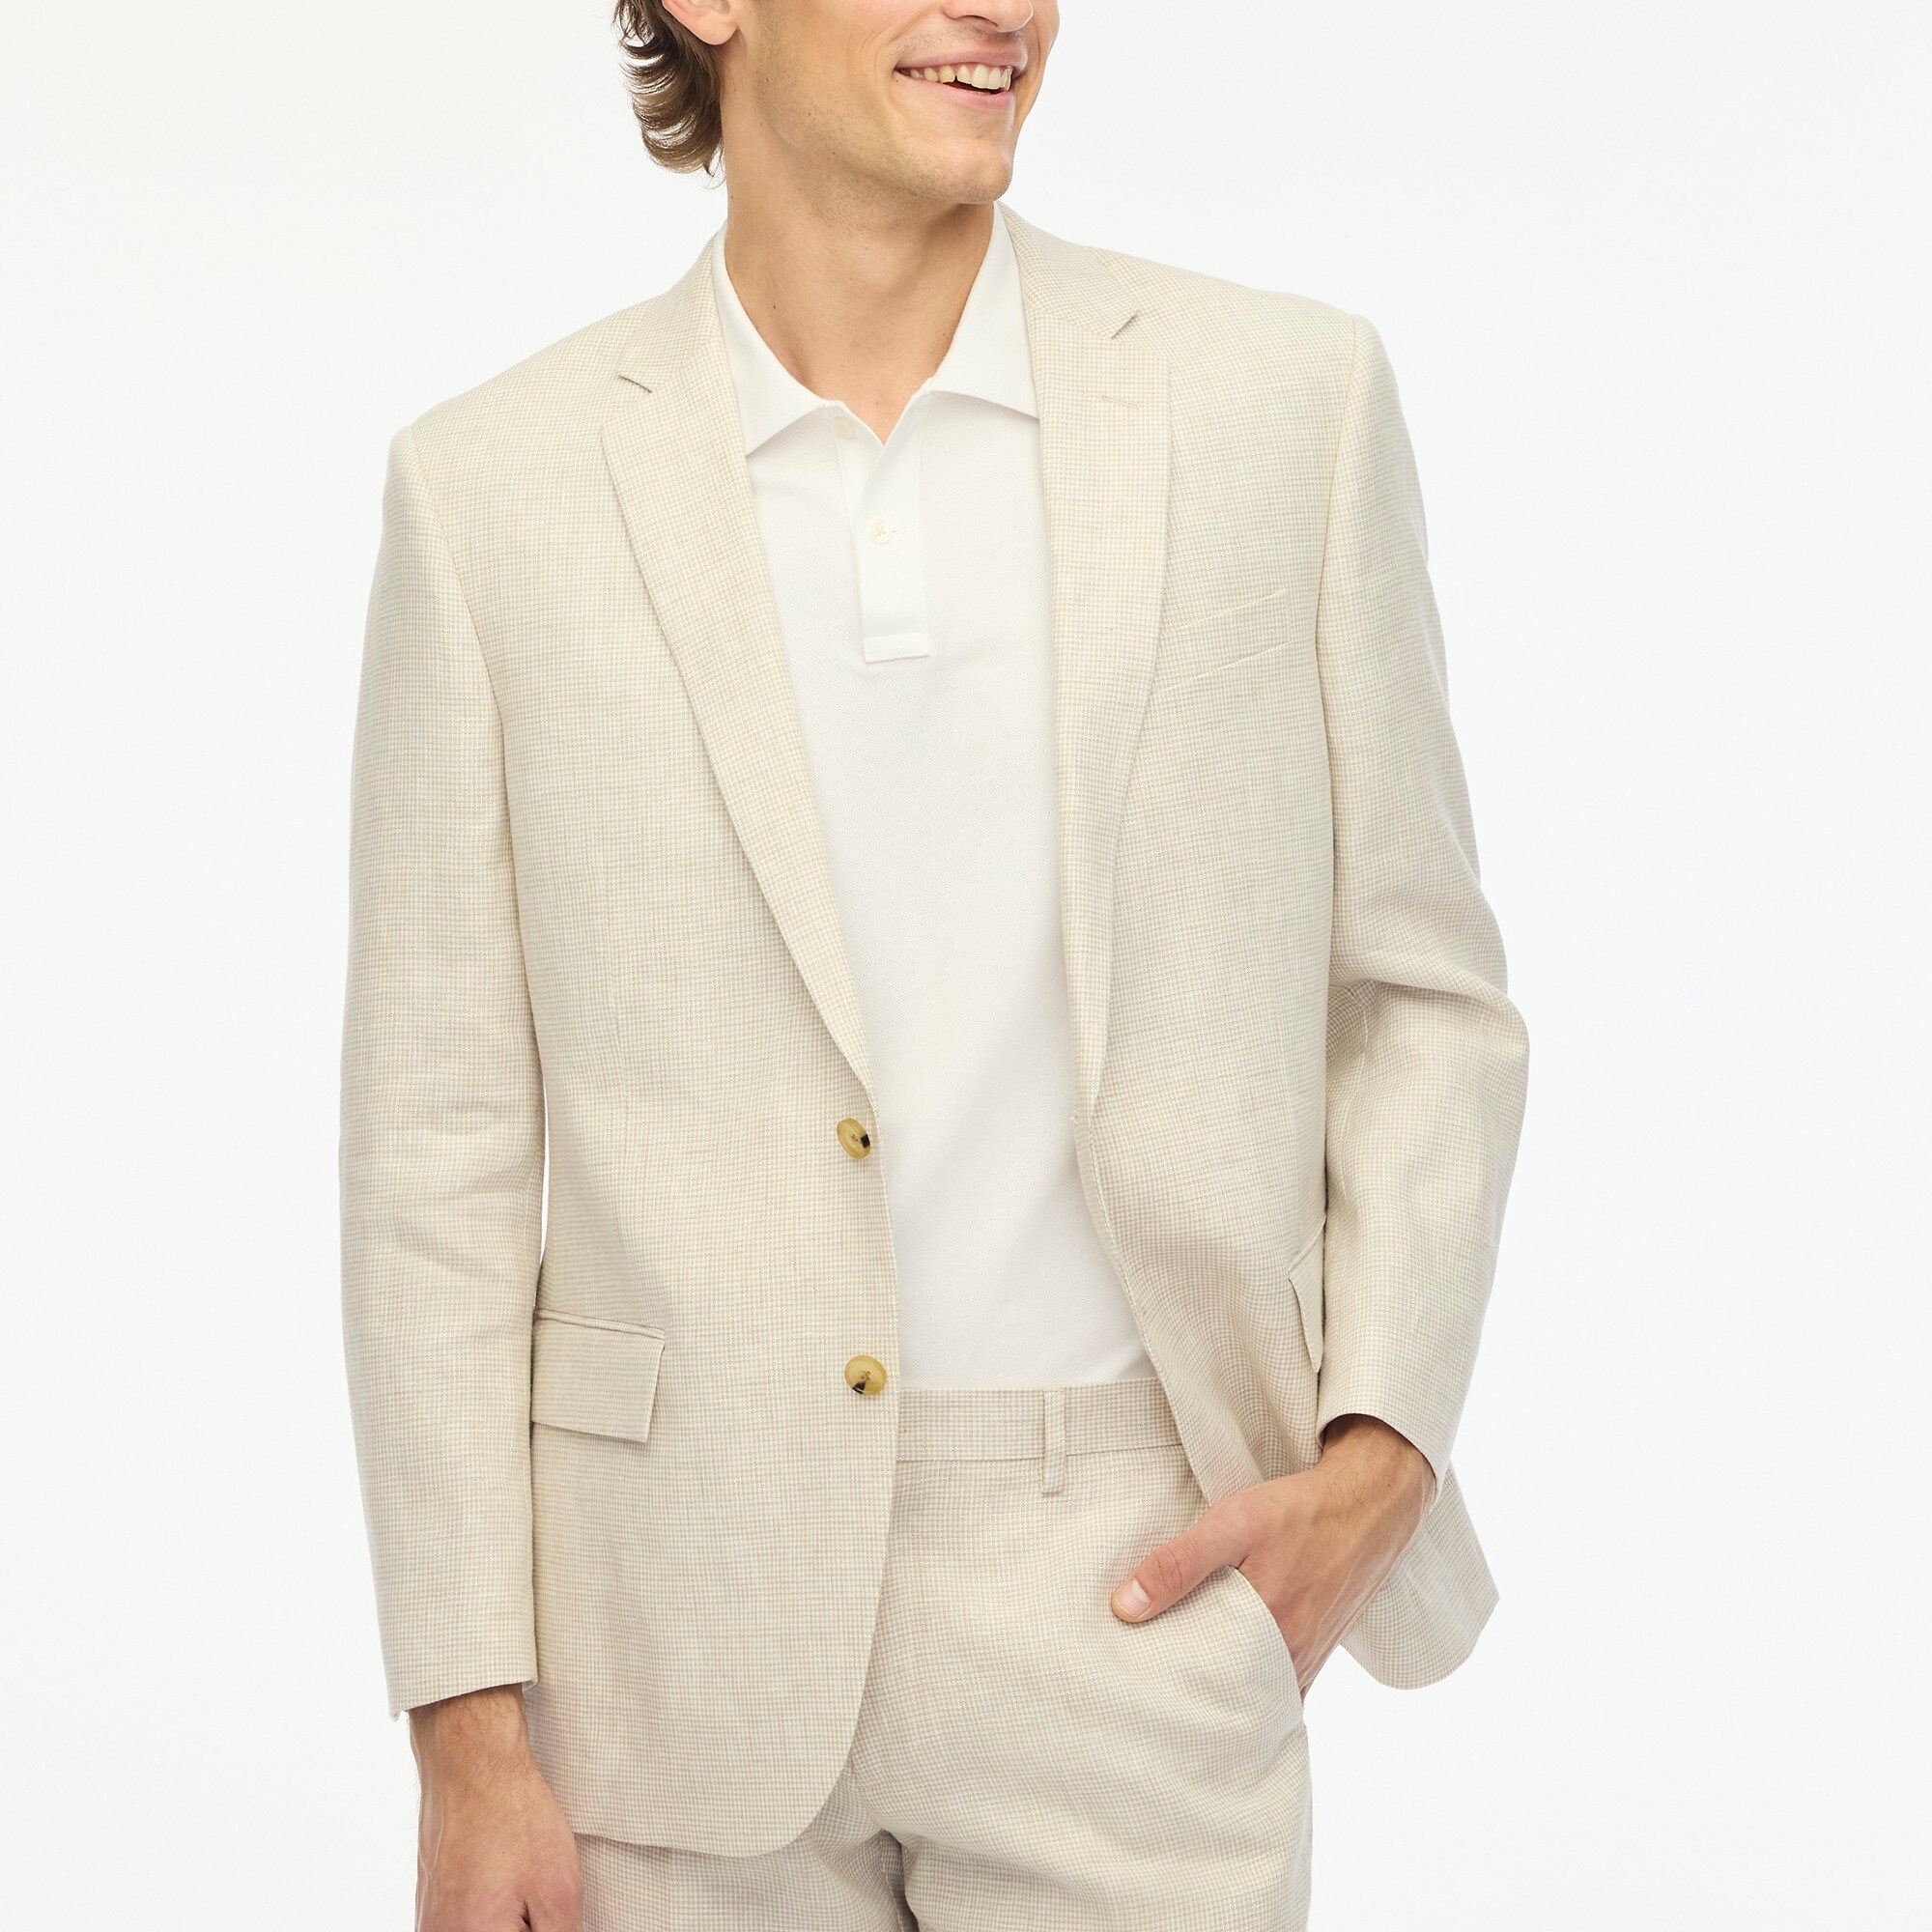  Slim-fit Thompson linen suit jacket